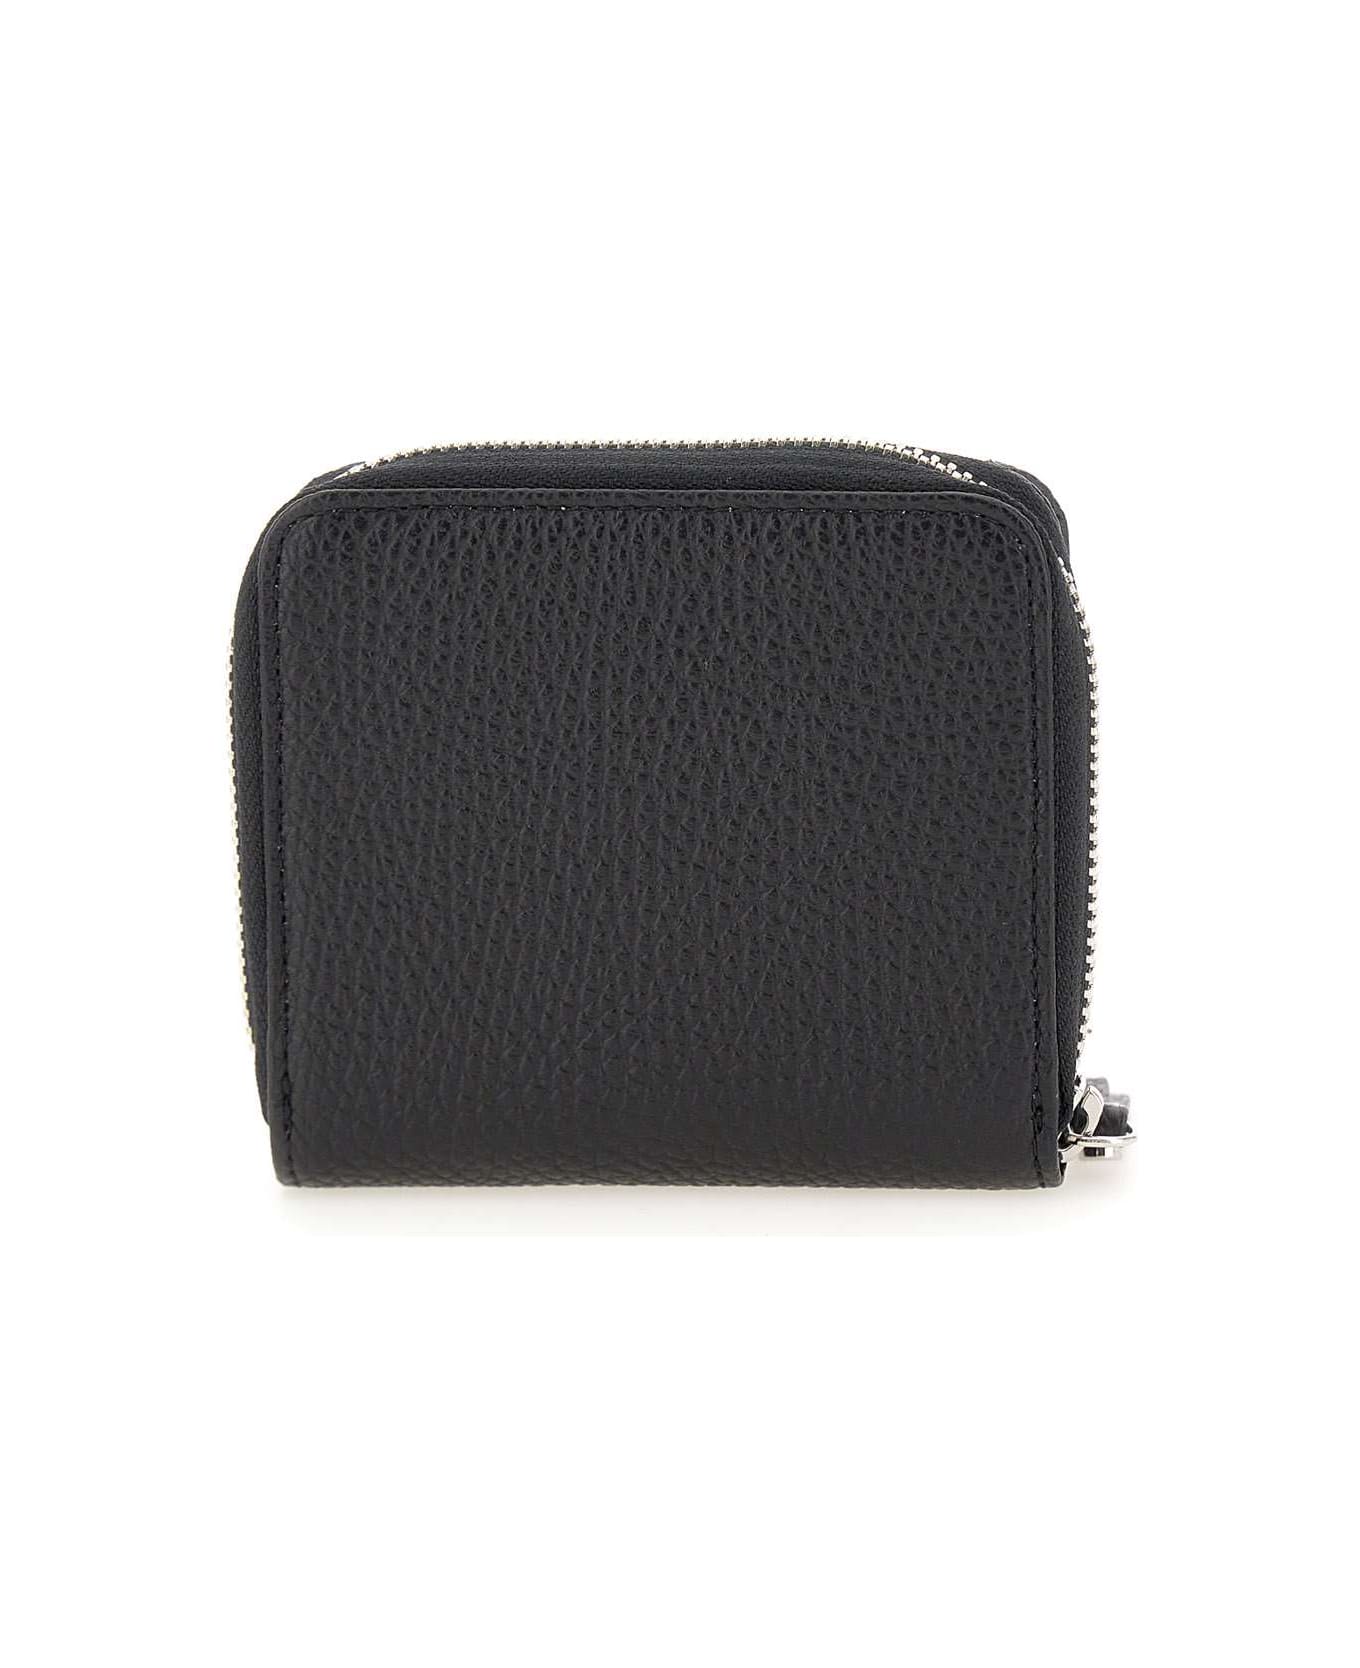 Gianni Chiarini Leather Wallet - BLACK